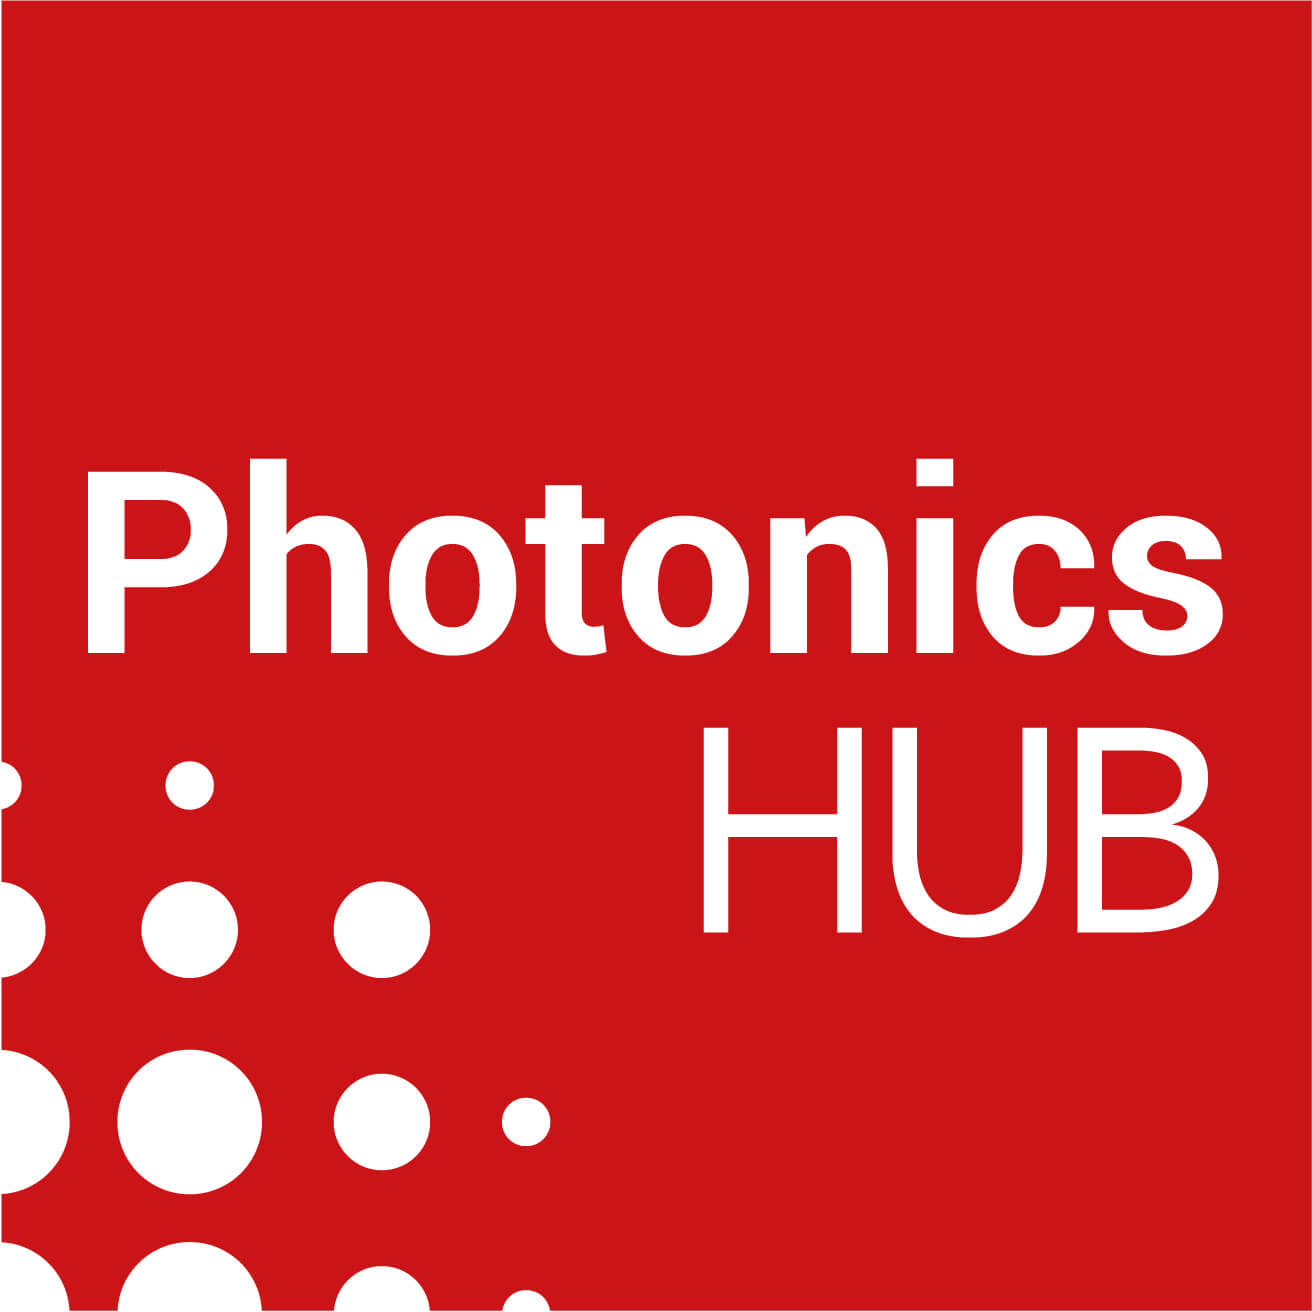 Photonics Hub